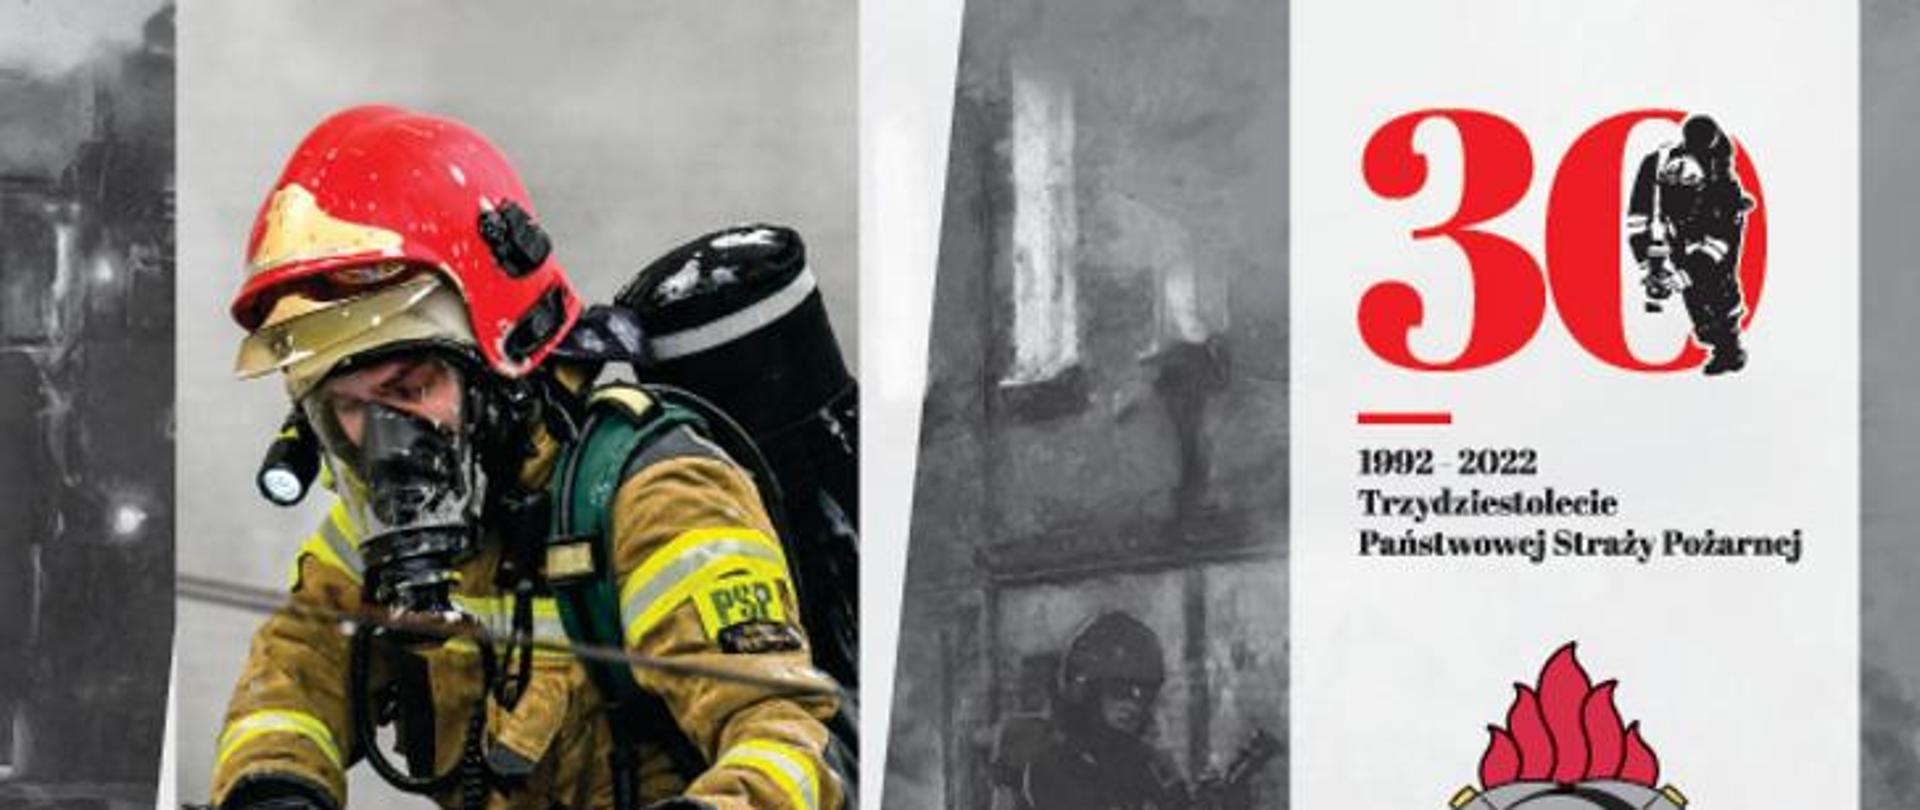 Zdjęcie przedstawia strażaka z ubraniu specjalnym z założonym aparatem ochrony układu oddechowego. Po prawej stronie logo trzydziestolecia PSP.